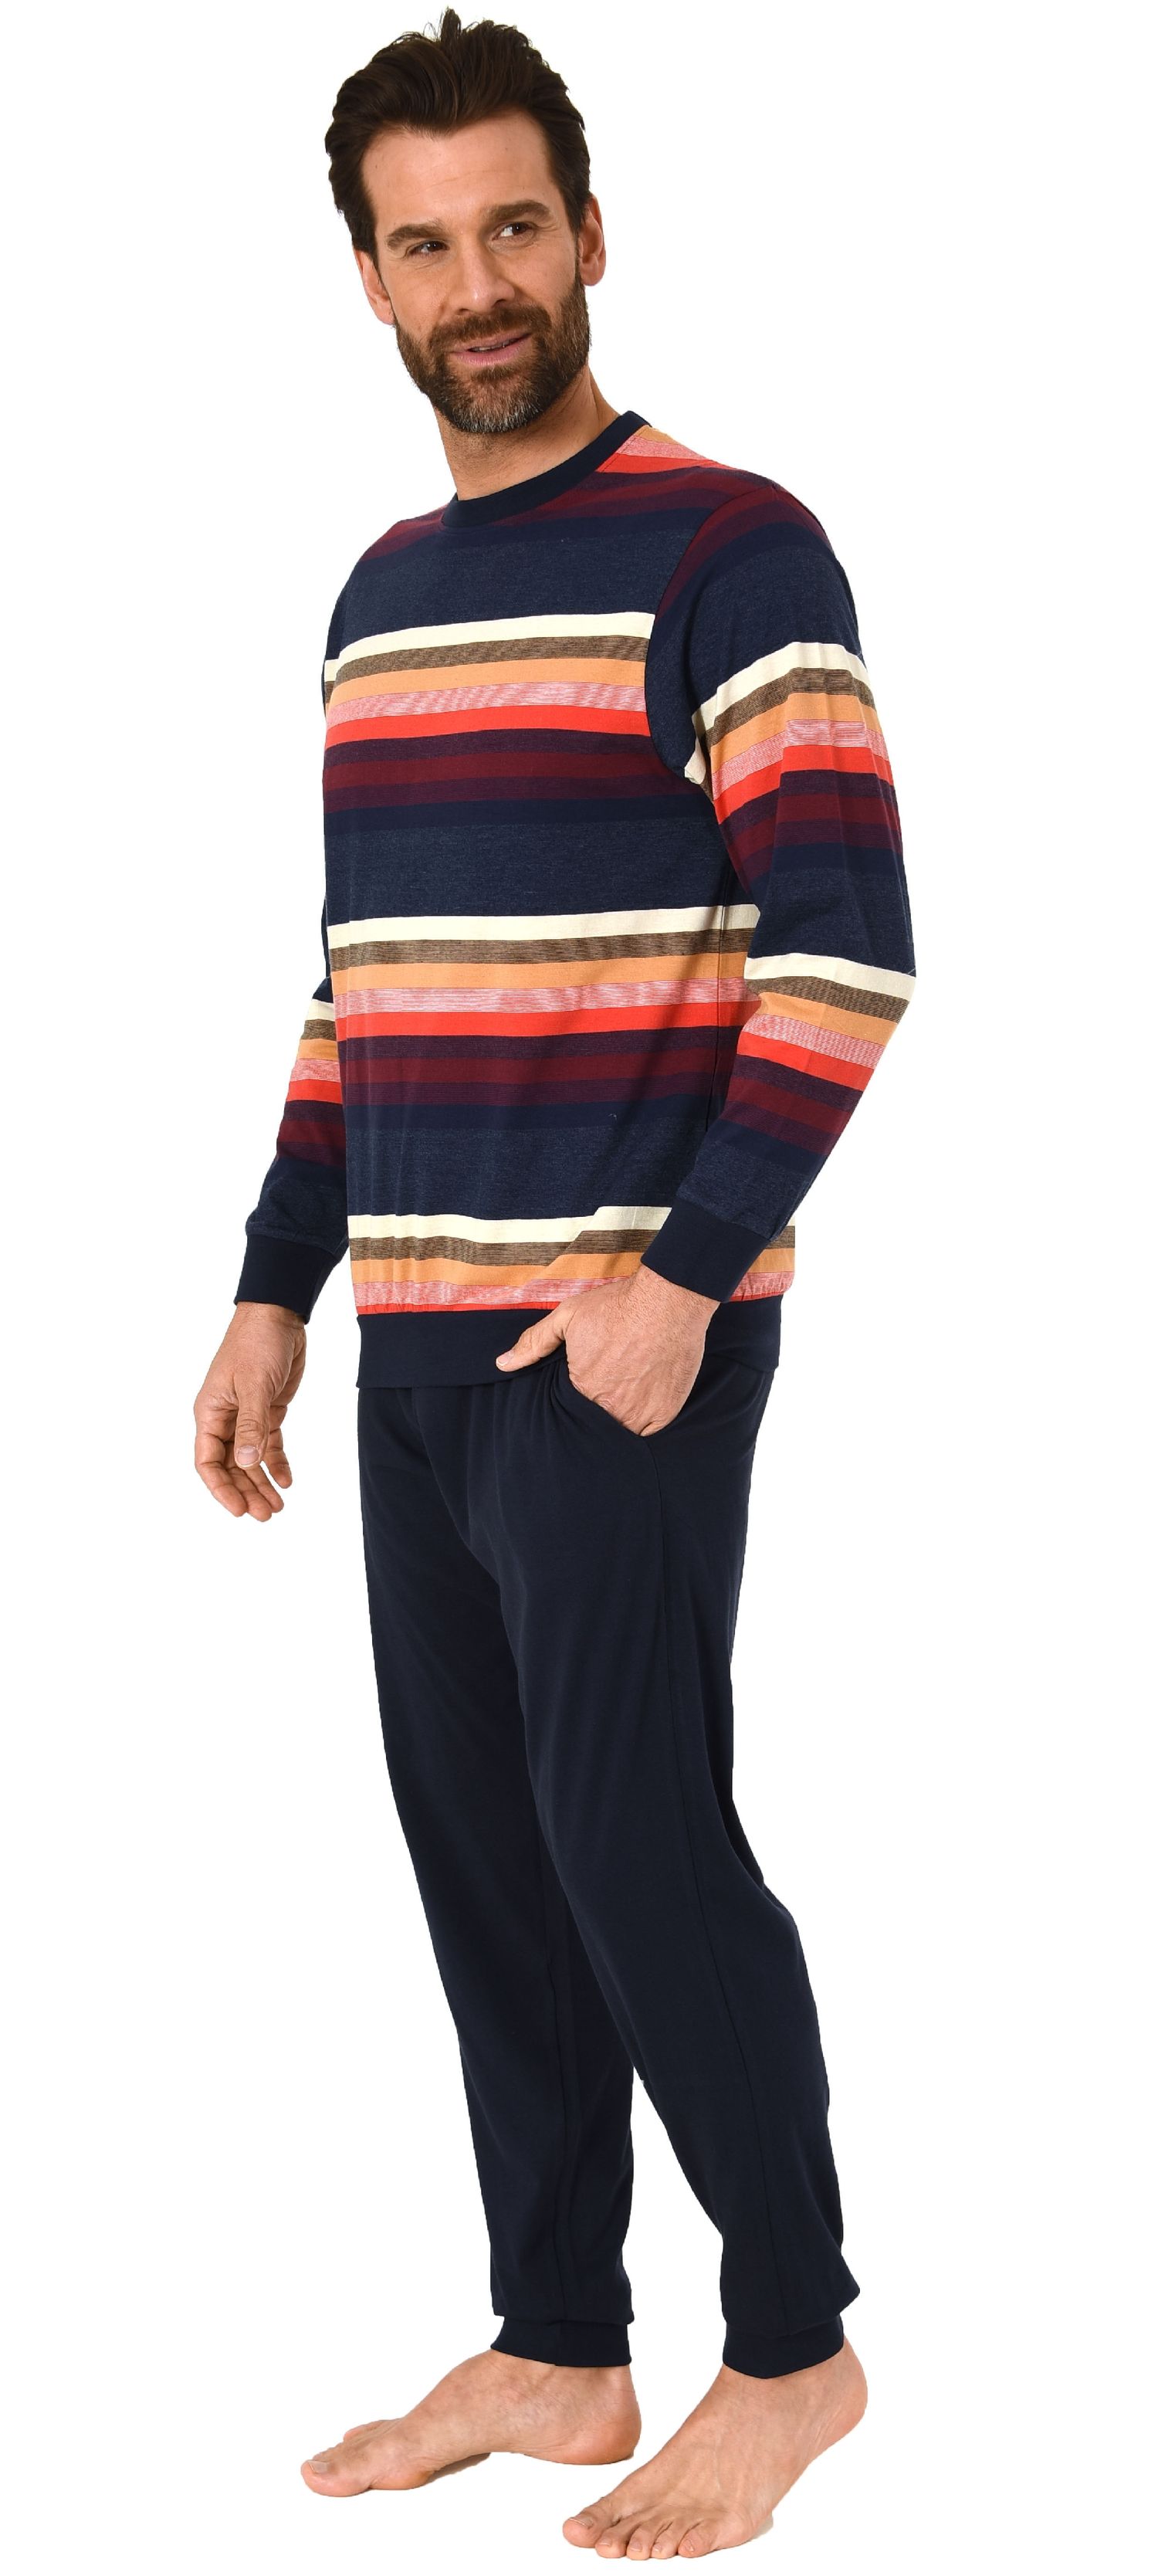 Herren Pyjama Schlafanzug langarm mit Bündchen in toller Streifenoptik  - 102 101 90 770